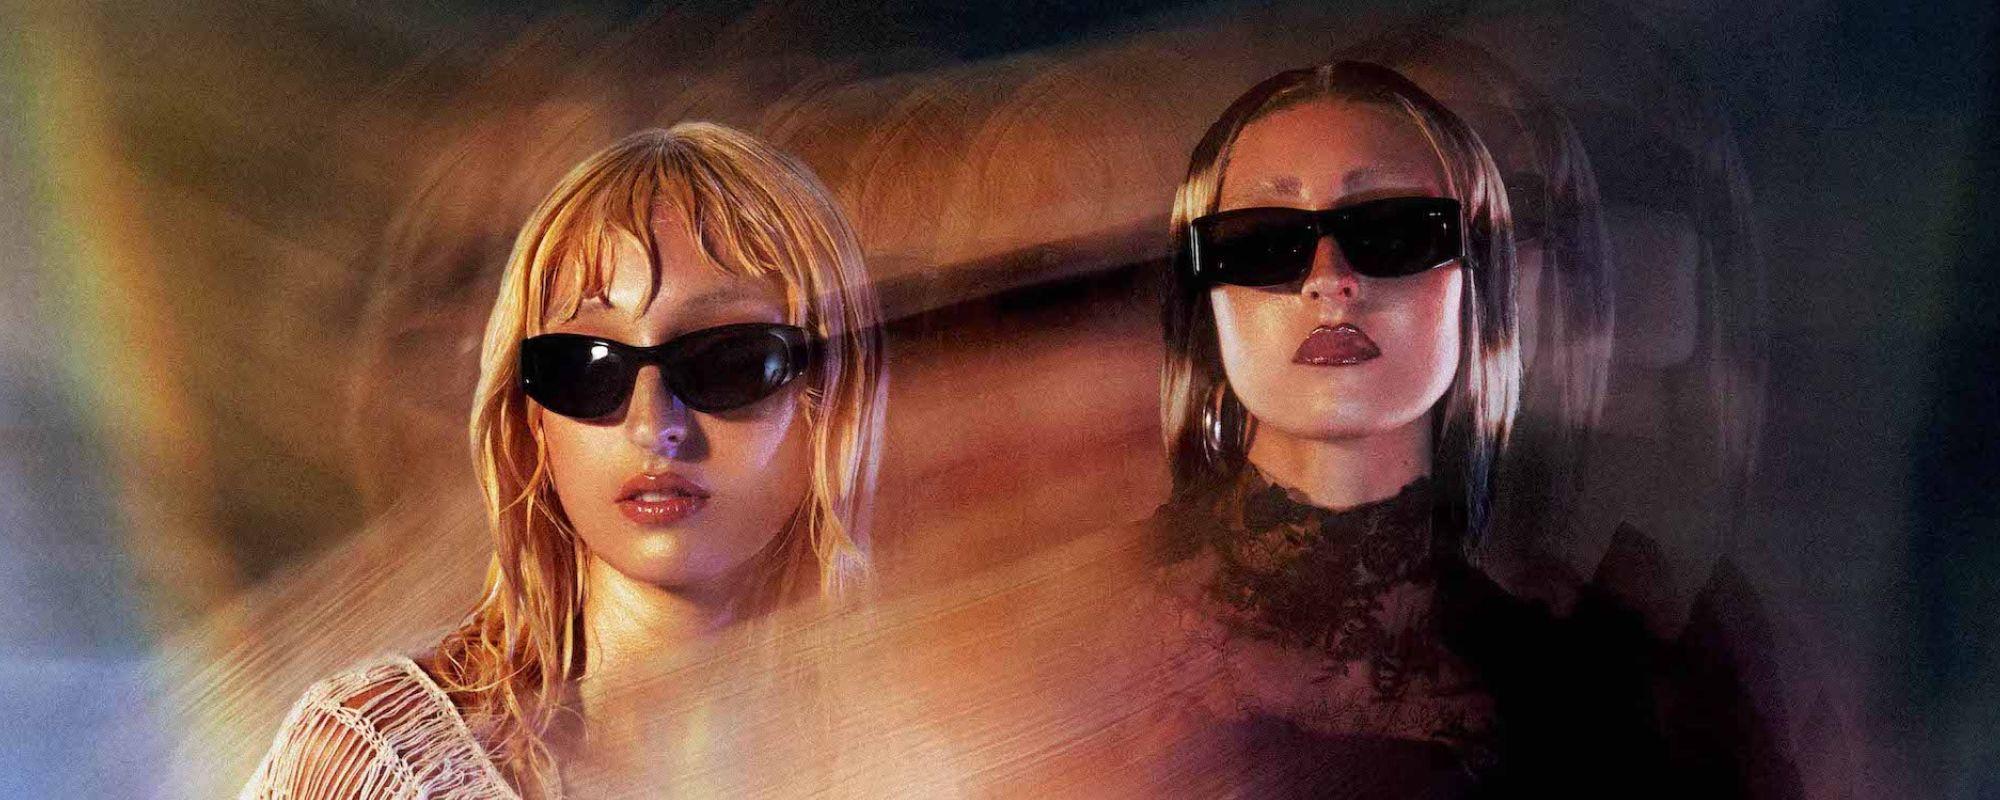 Lilith & Eve Sunglasses